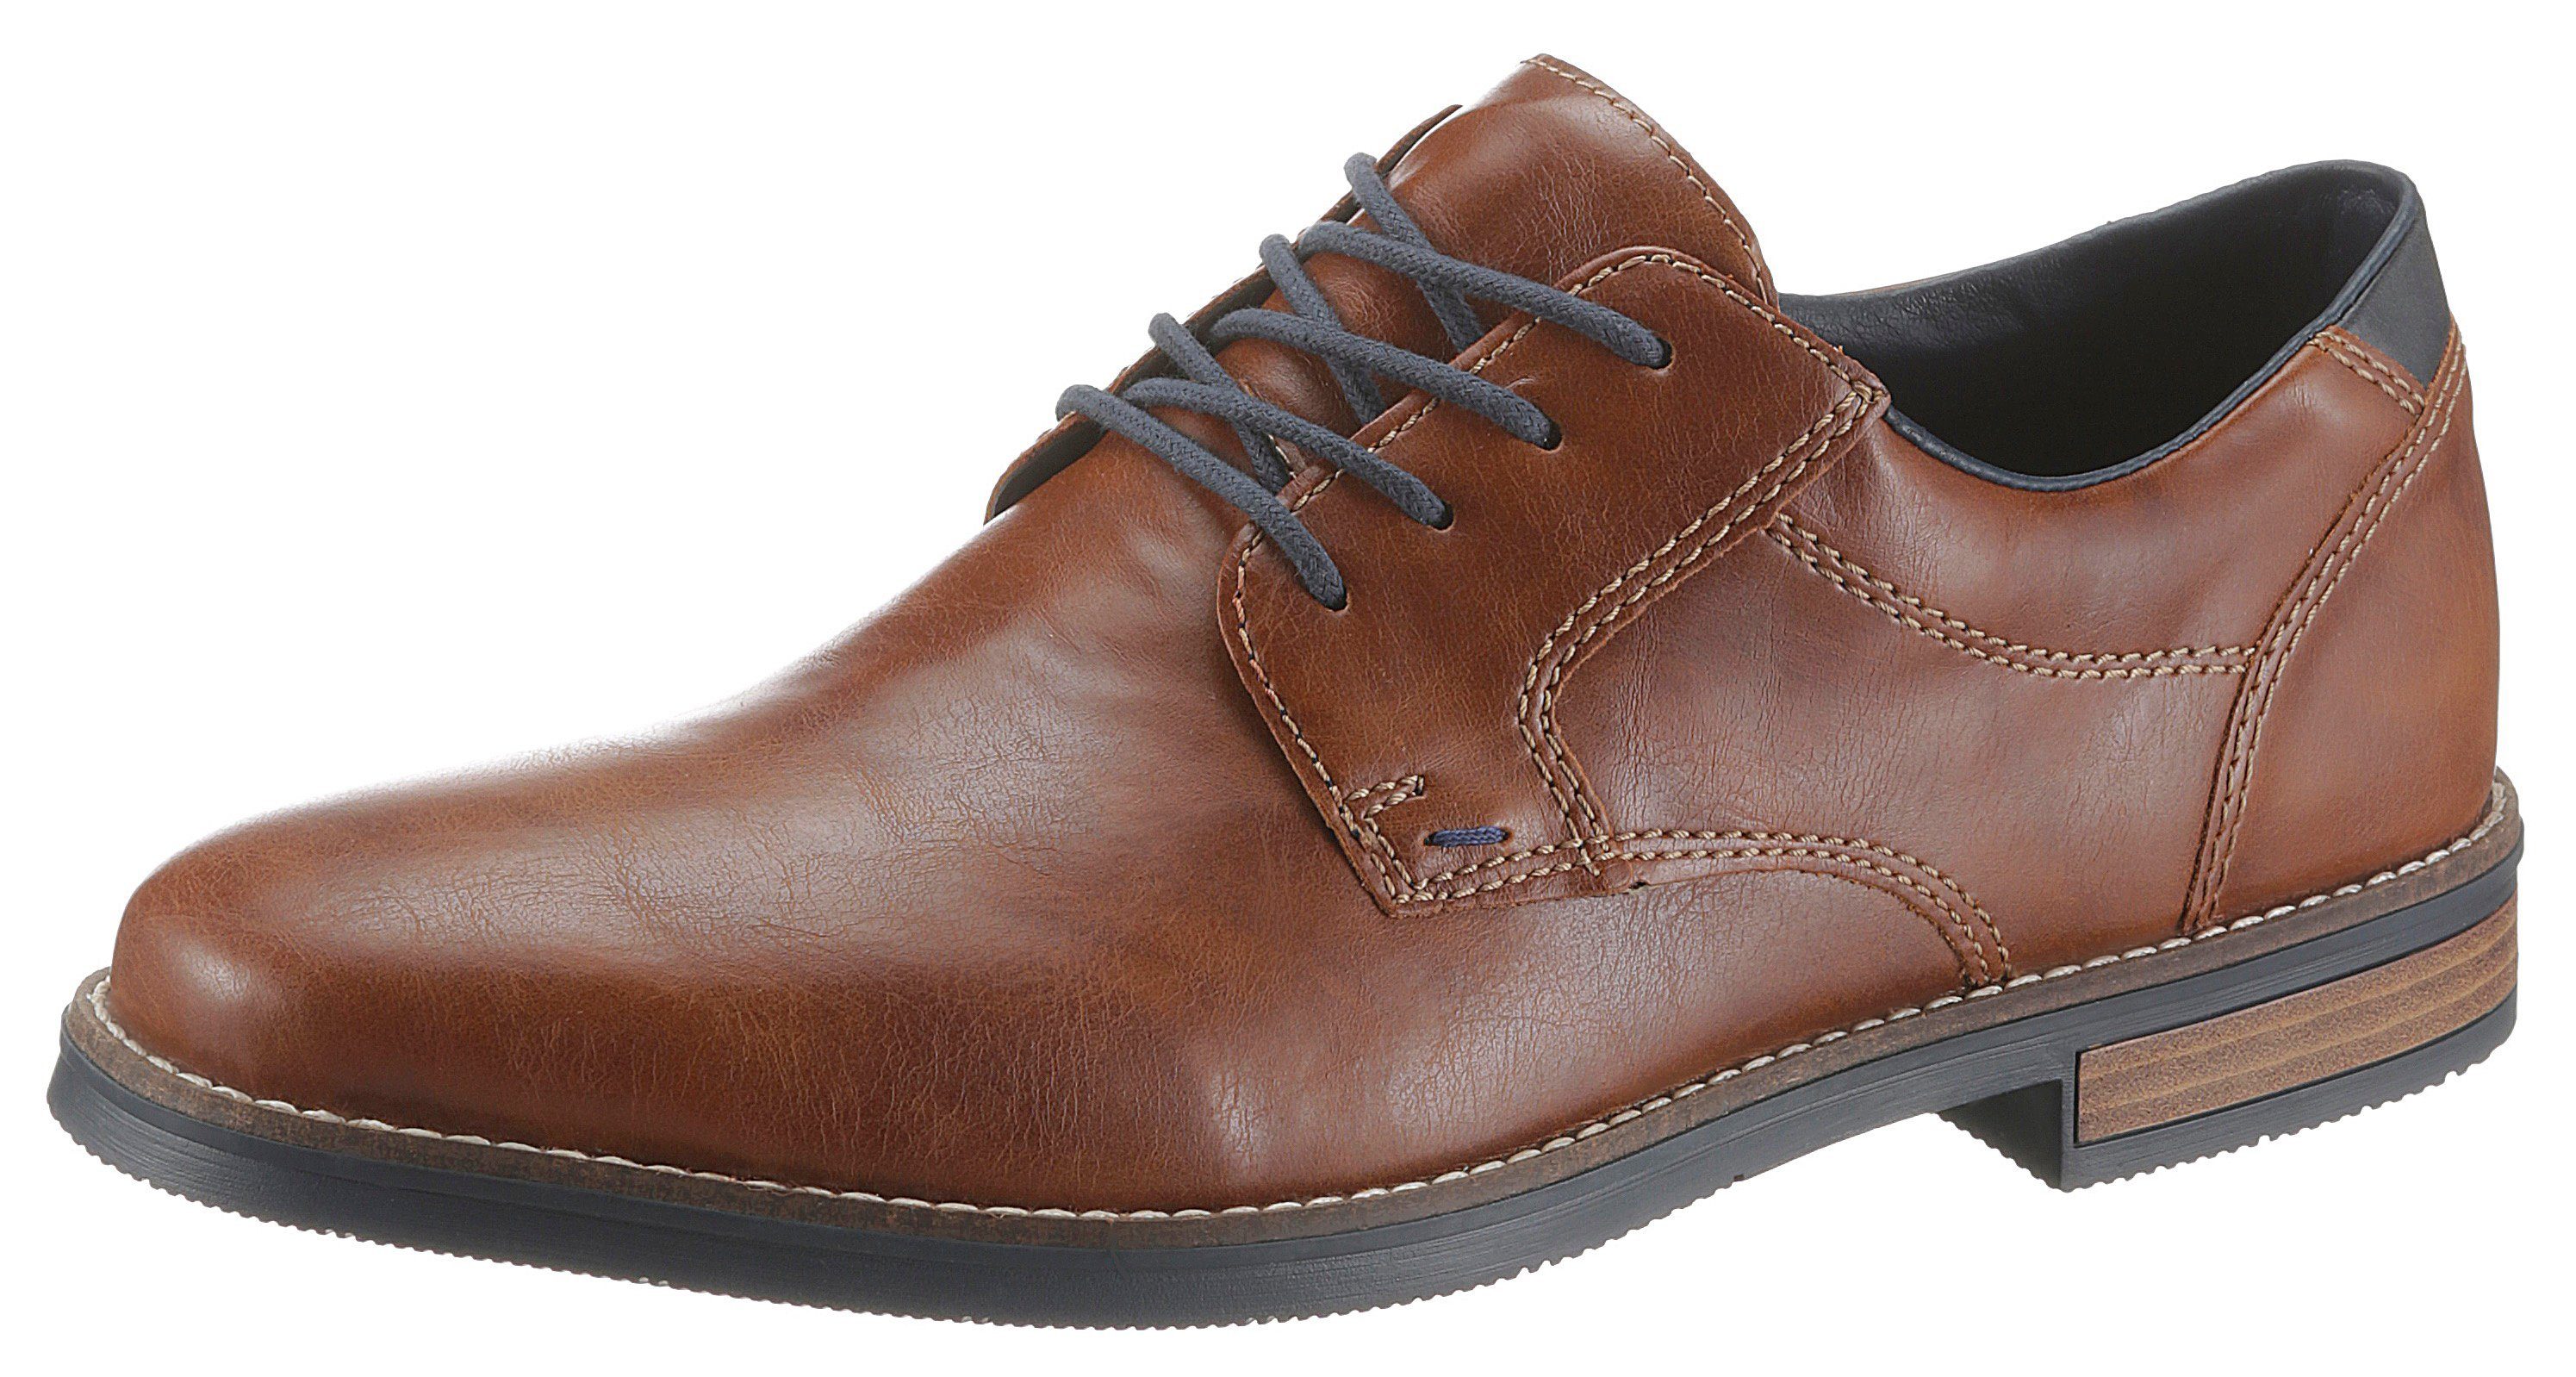 Braune Business-Schuhe für Herren online kaufen | OTTO